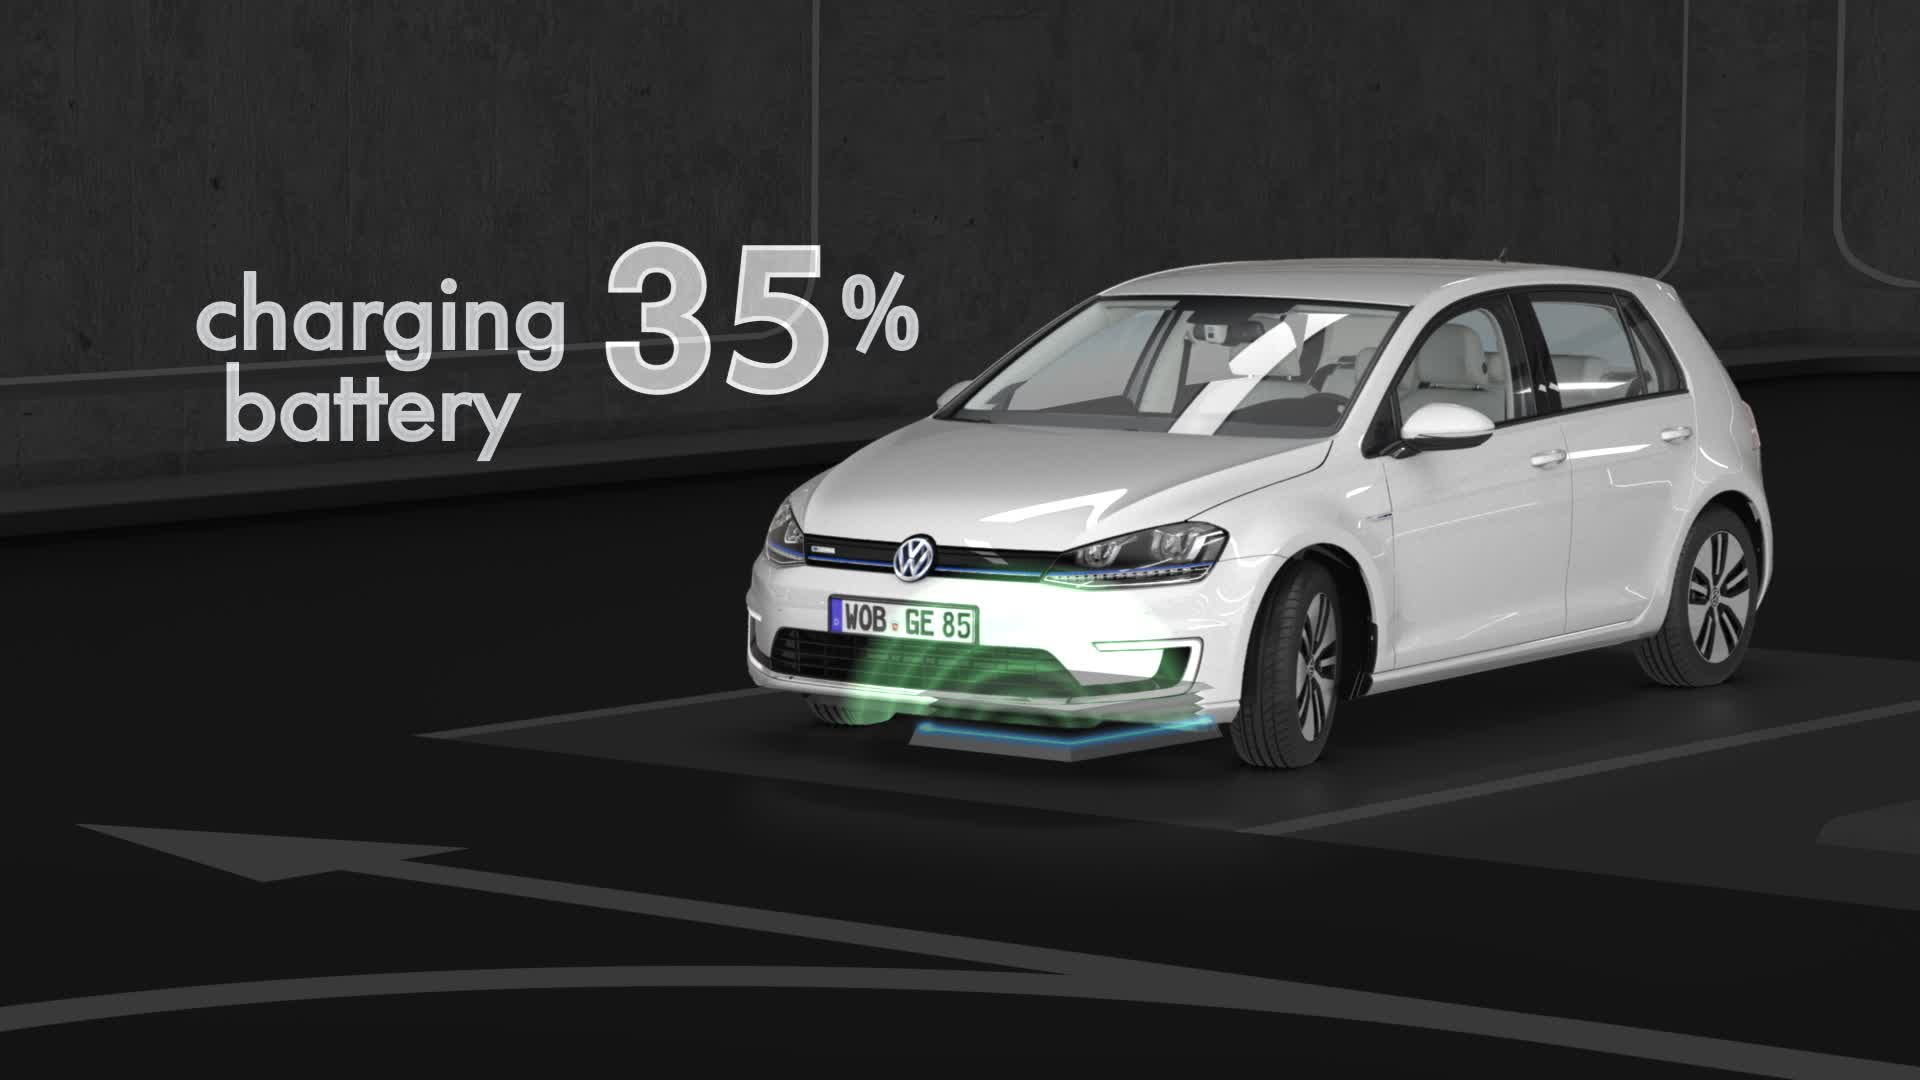 „V-Charge": Volkswagen forciert das automatisierte Parken und Aufladen von E-Fahrzeugen